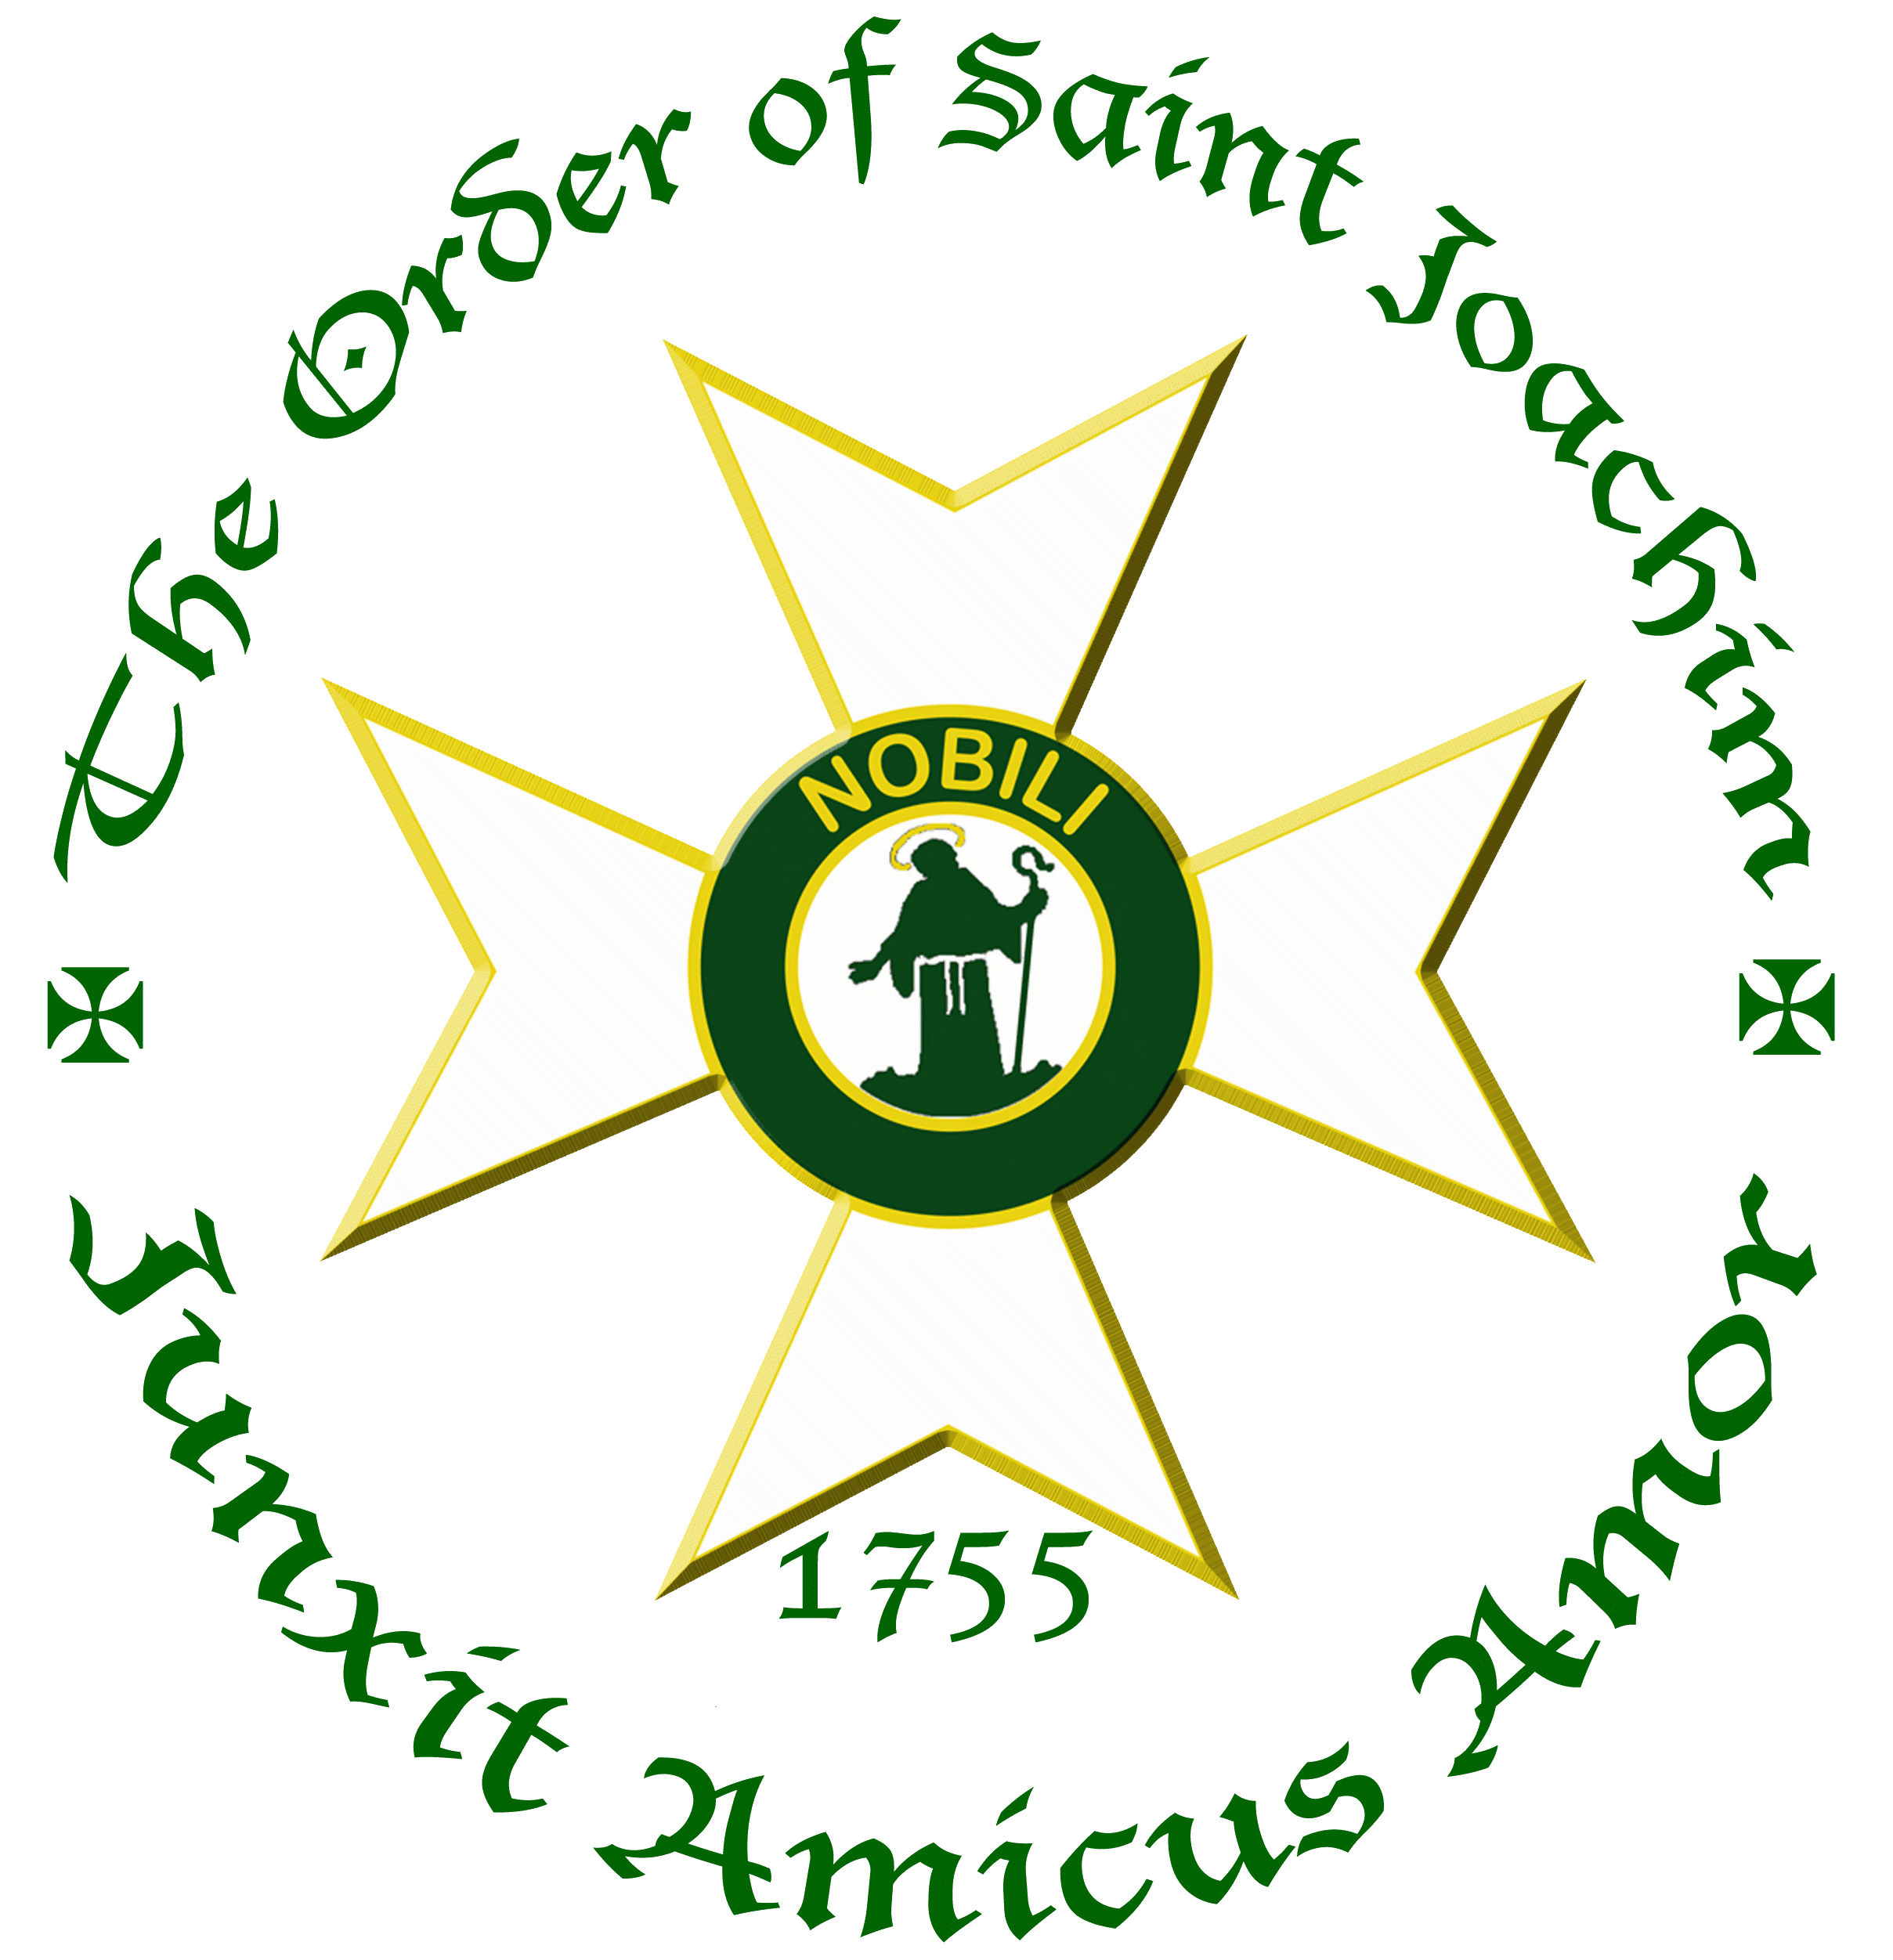 The Order of Saint Joachim